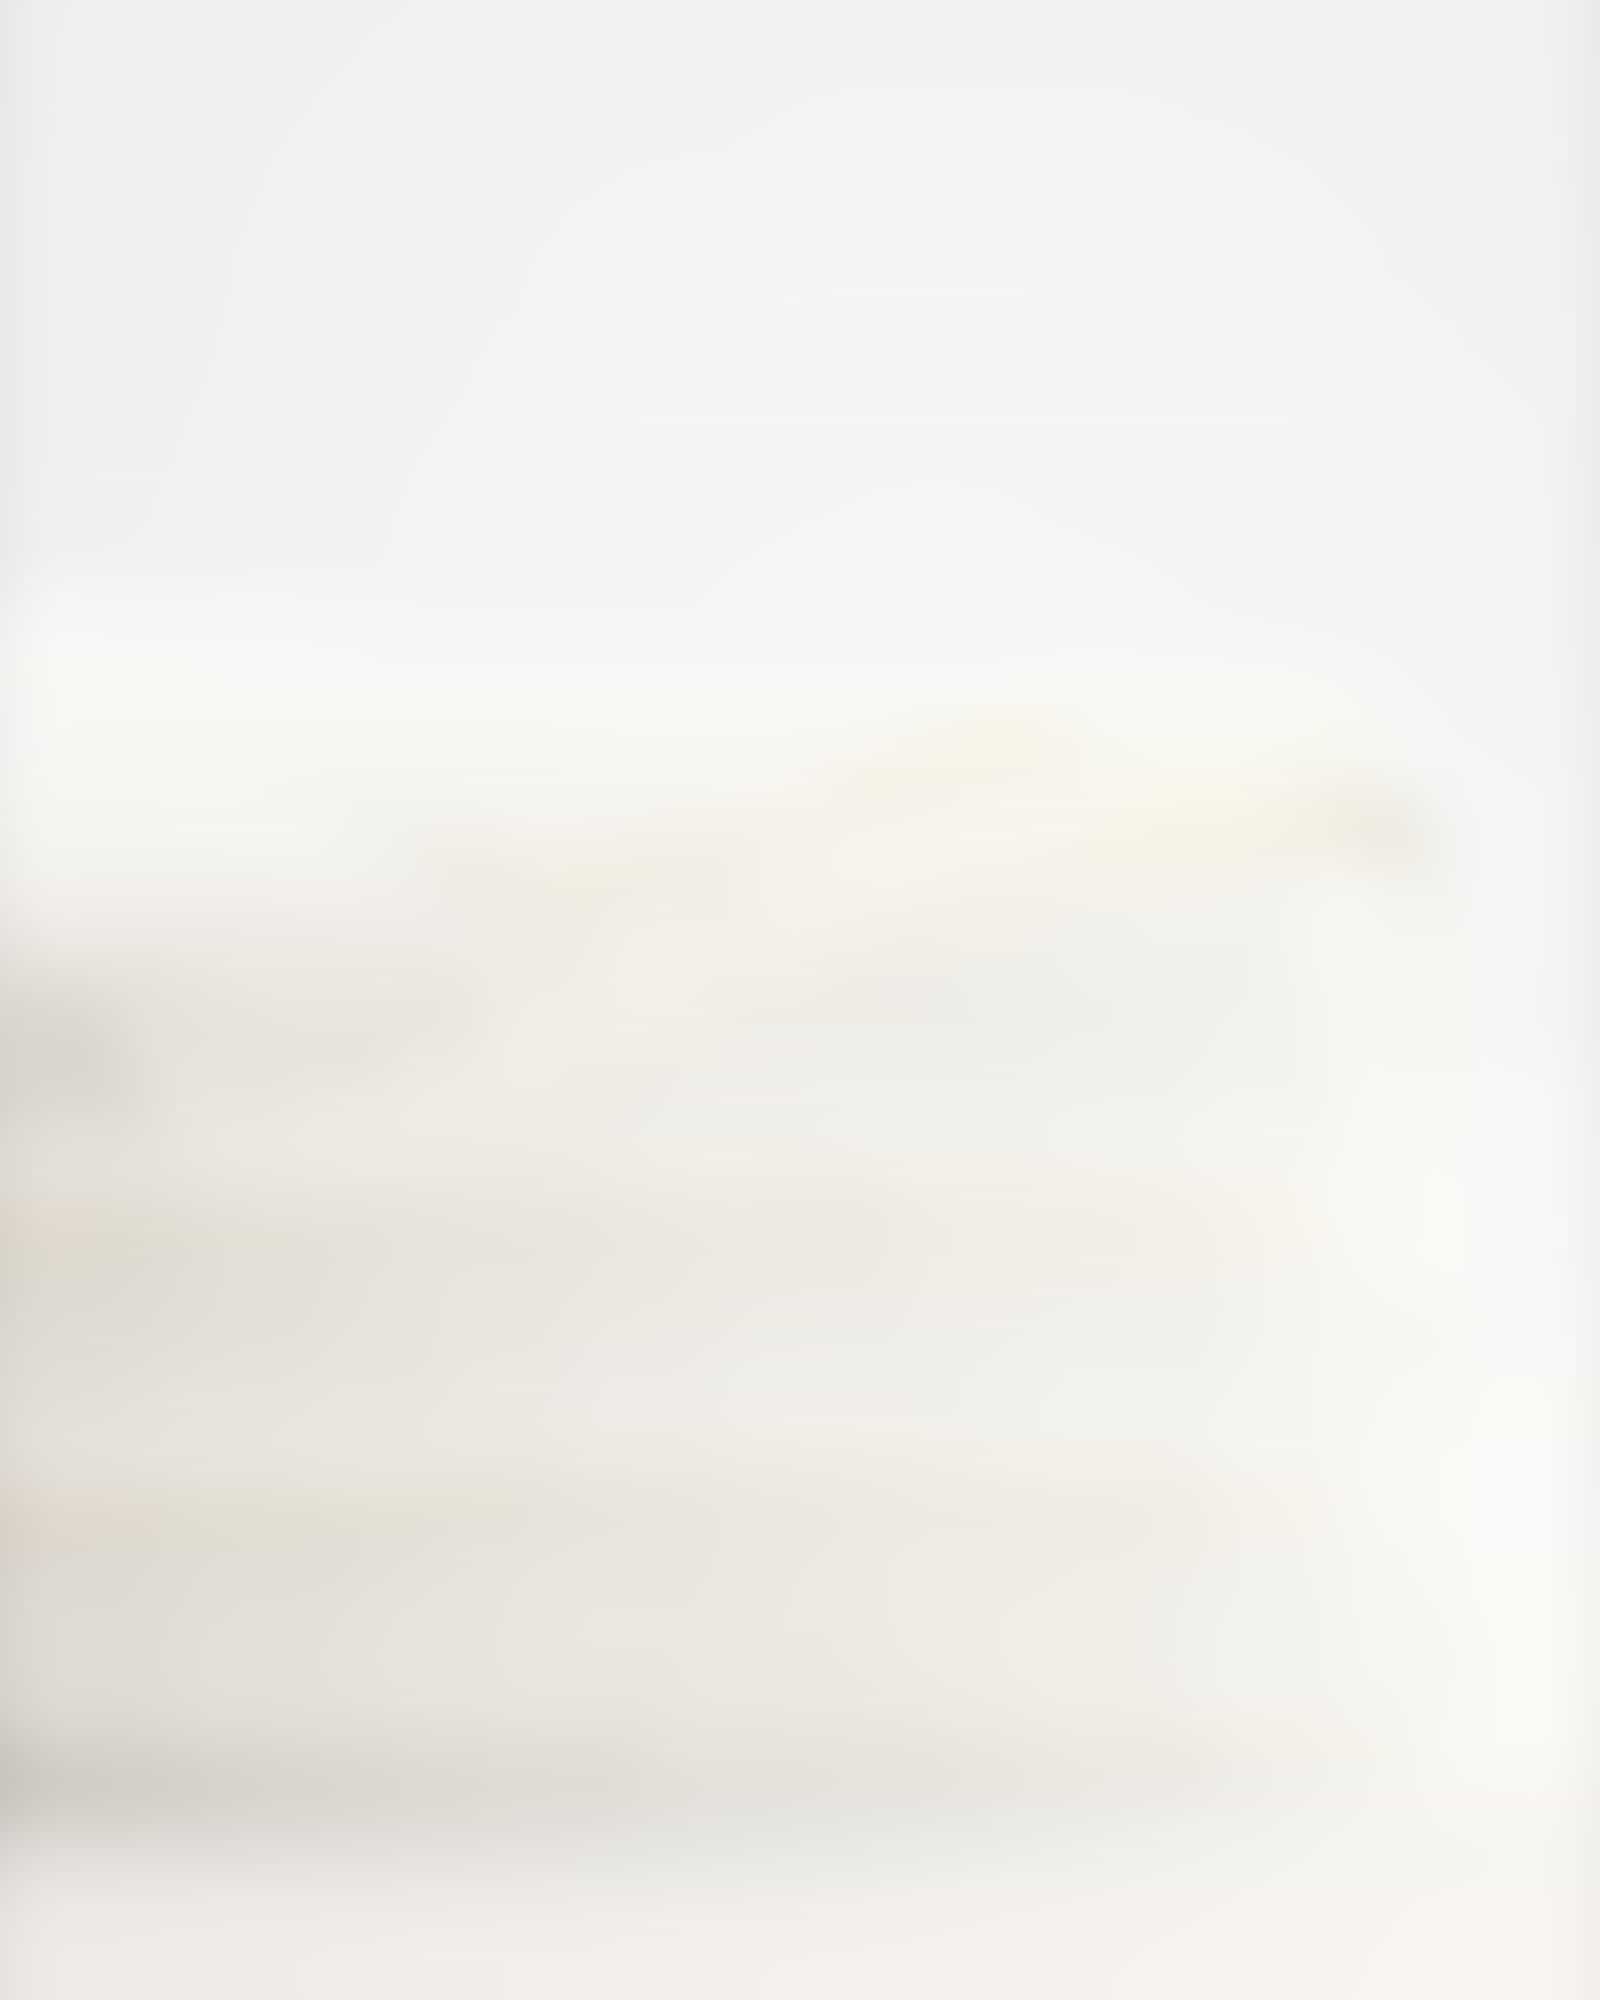 Cawö Heritage 4000 - Farbe: weiß - 600 Waschhandschuh 16x22 cm